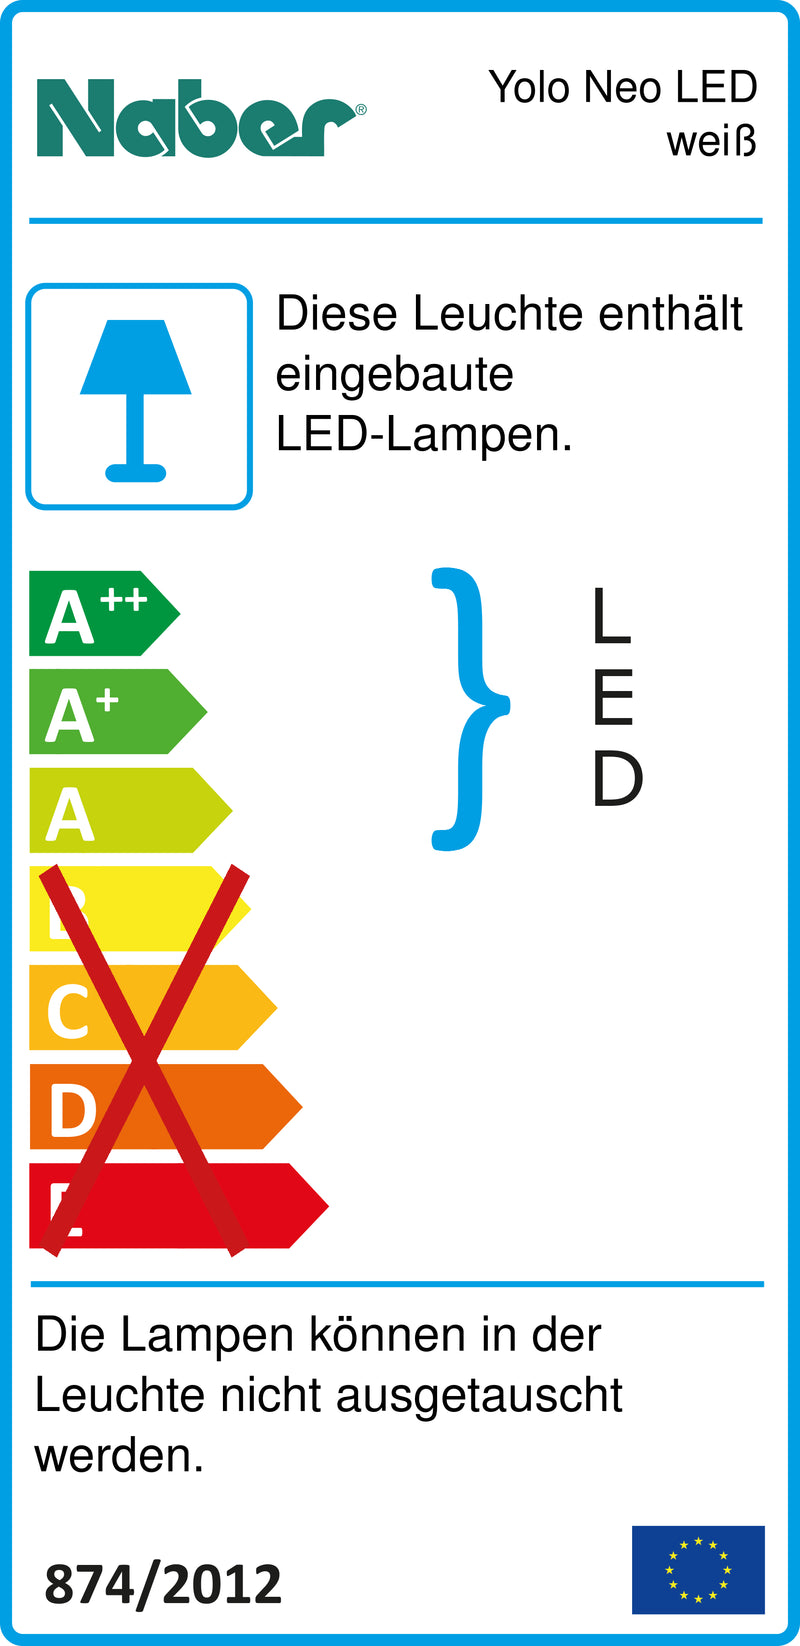 E-Label zu Zeichnung zu Yolo Neo LED weiß als Variante Einzelleuchte m. S., 4000 K neutralweiß von Naber GmbH in der Kategorie Lichttechnik in Österreich auf conceptshop.at